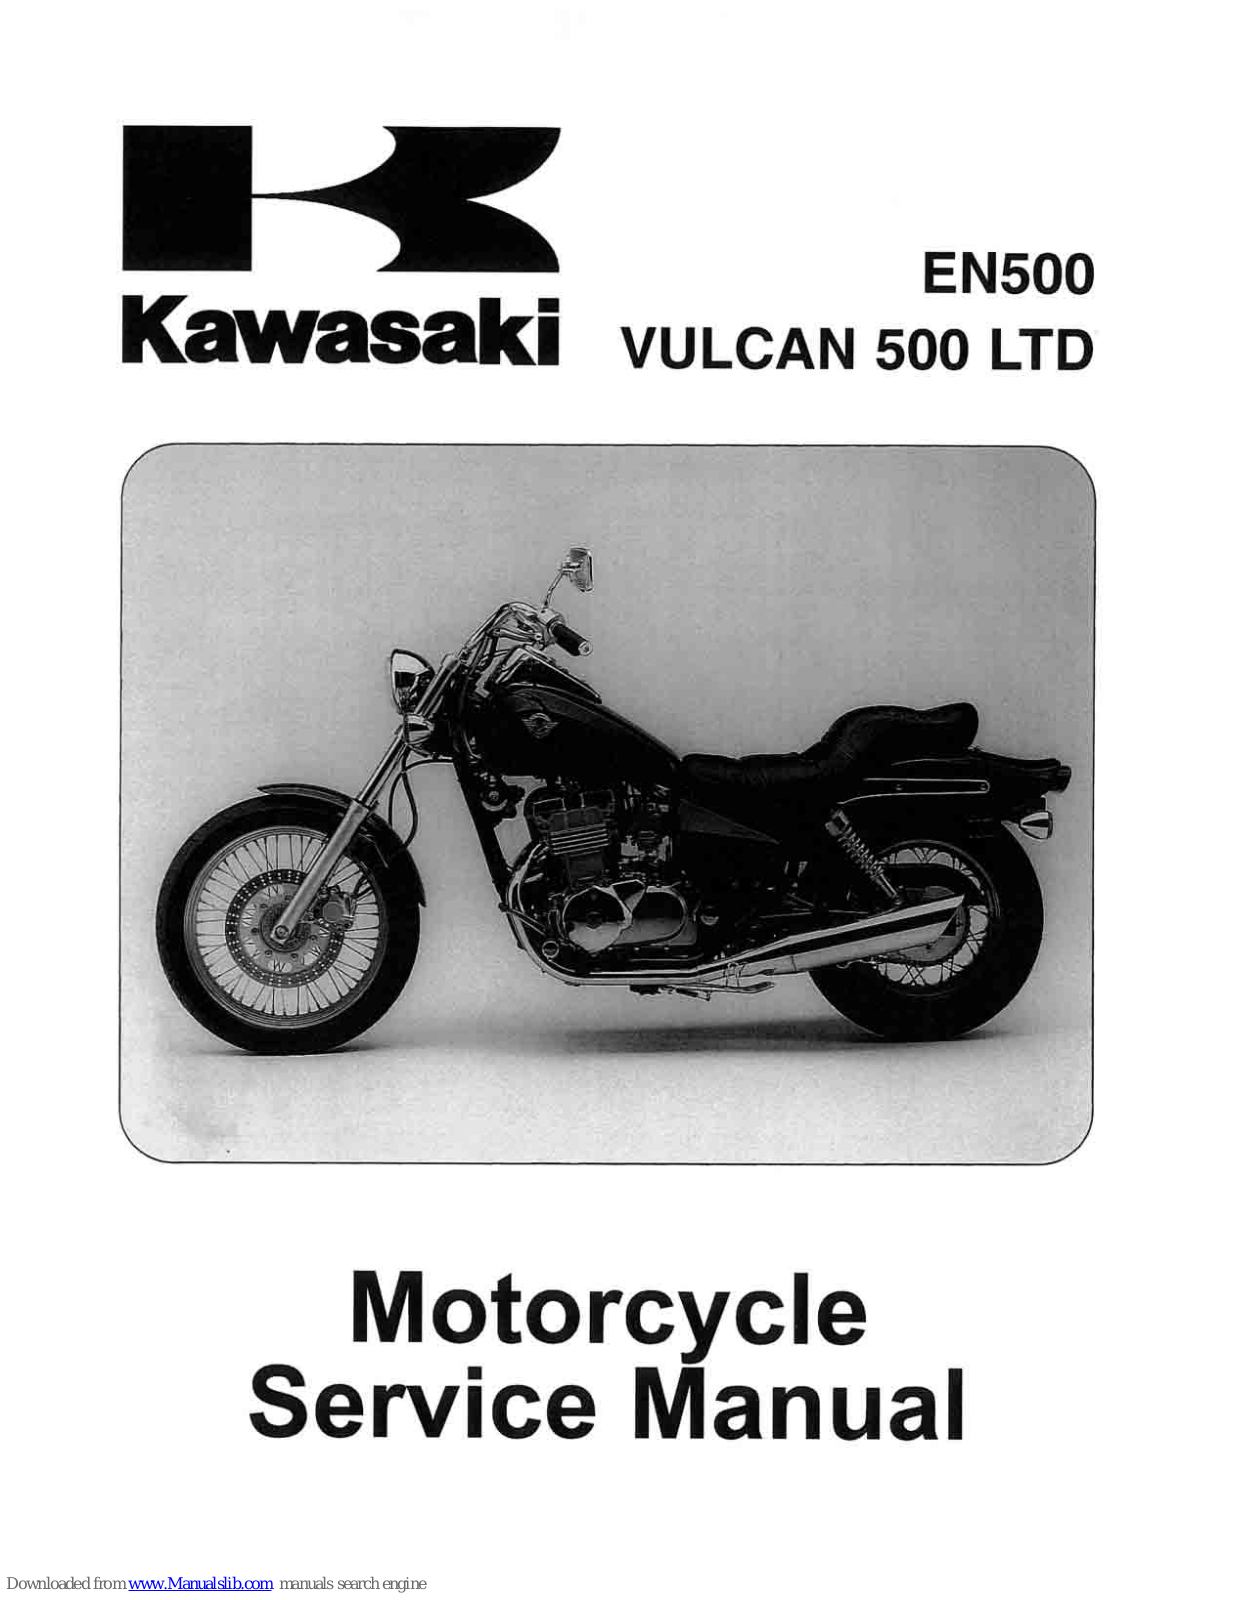 Kawasaki EN500, Vulcan 500 LTD Service Manual